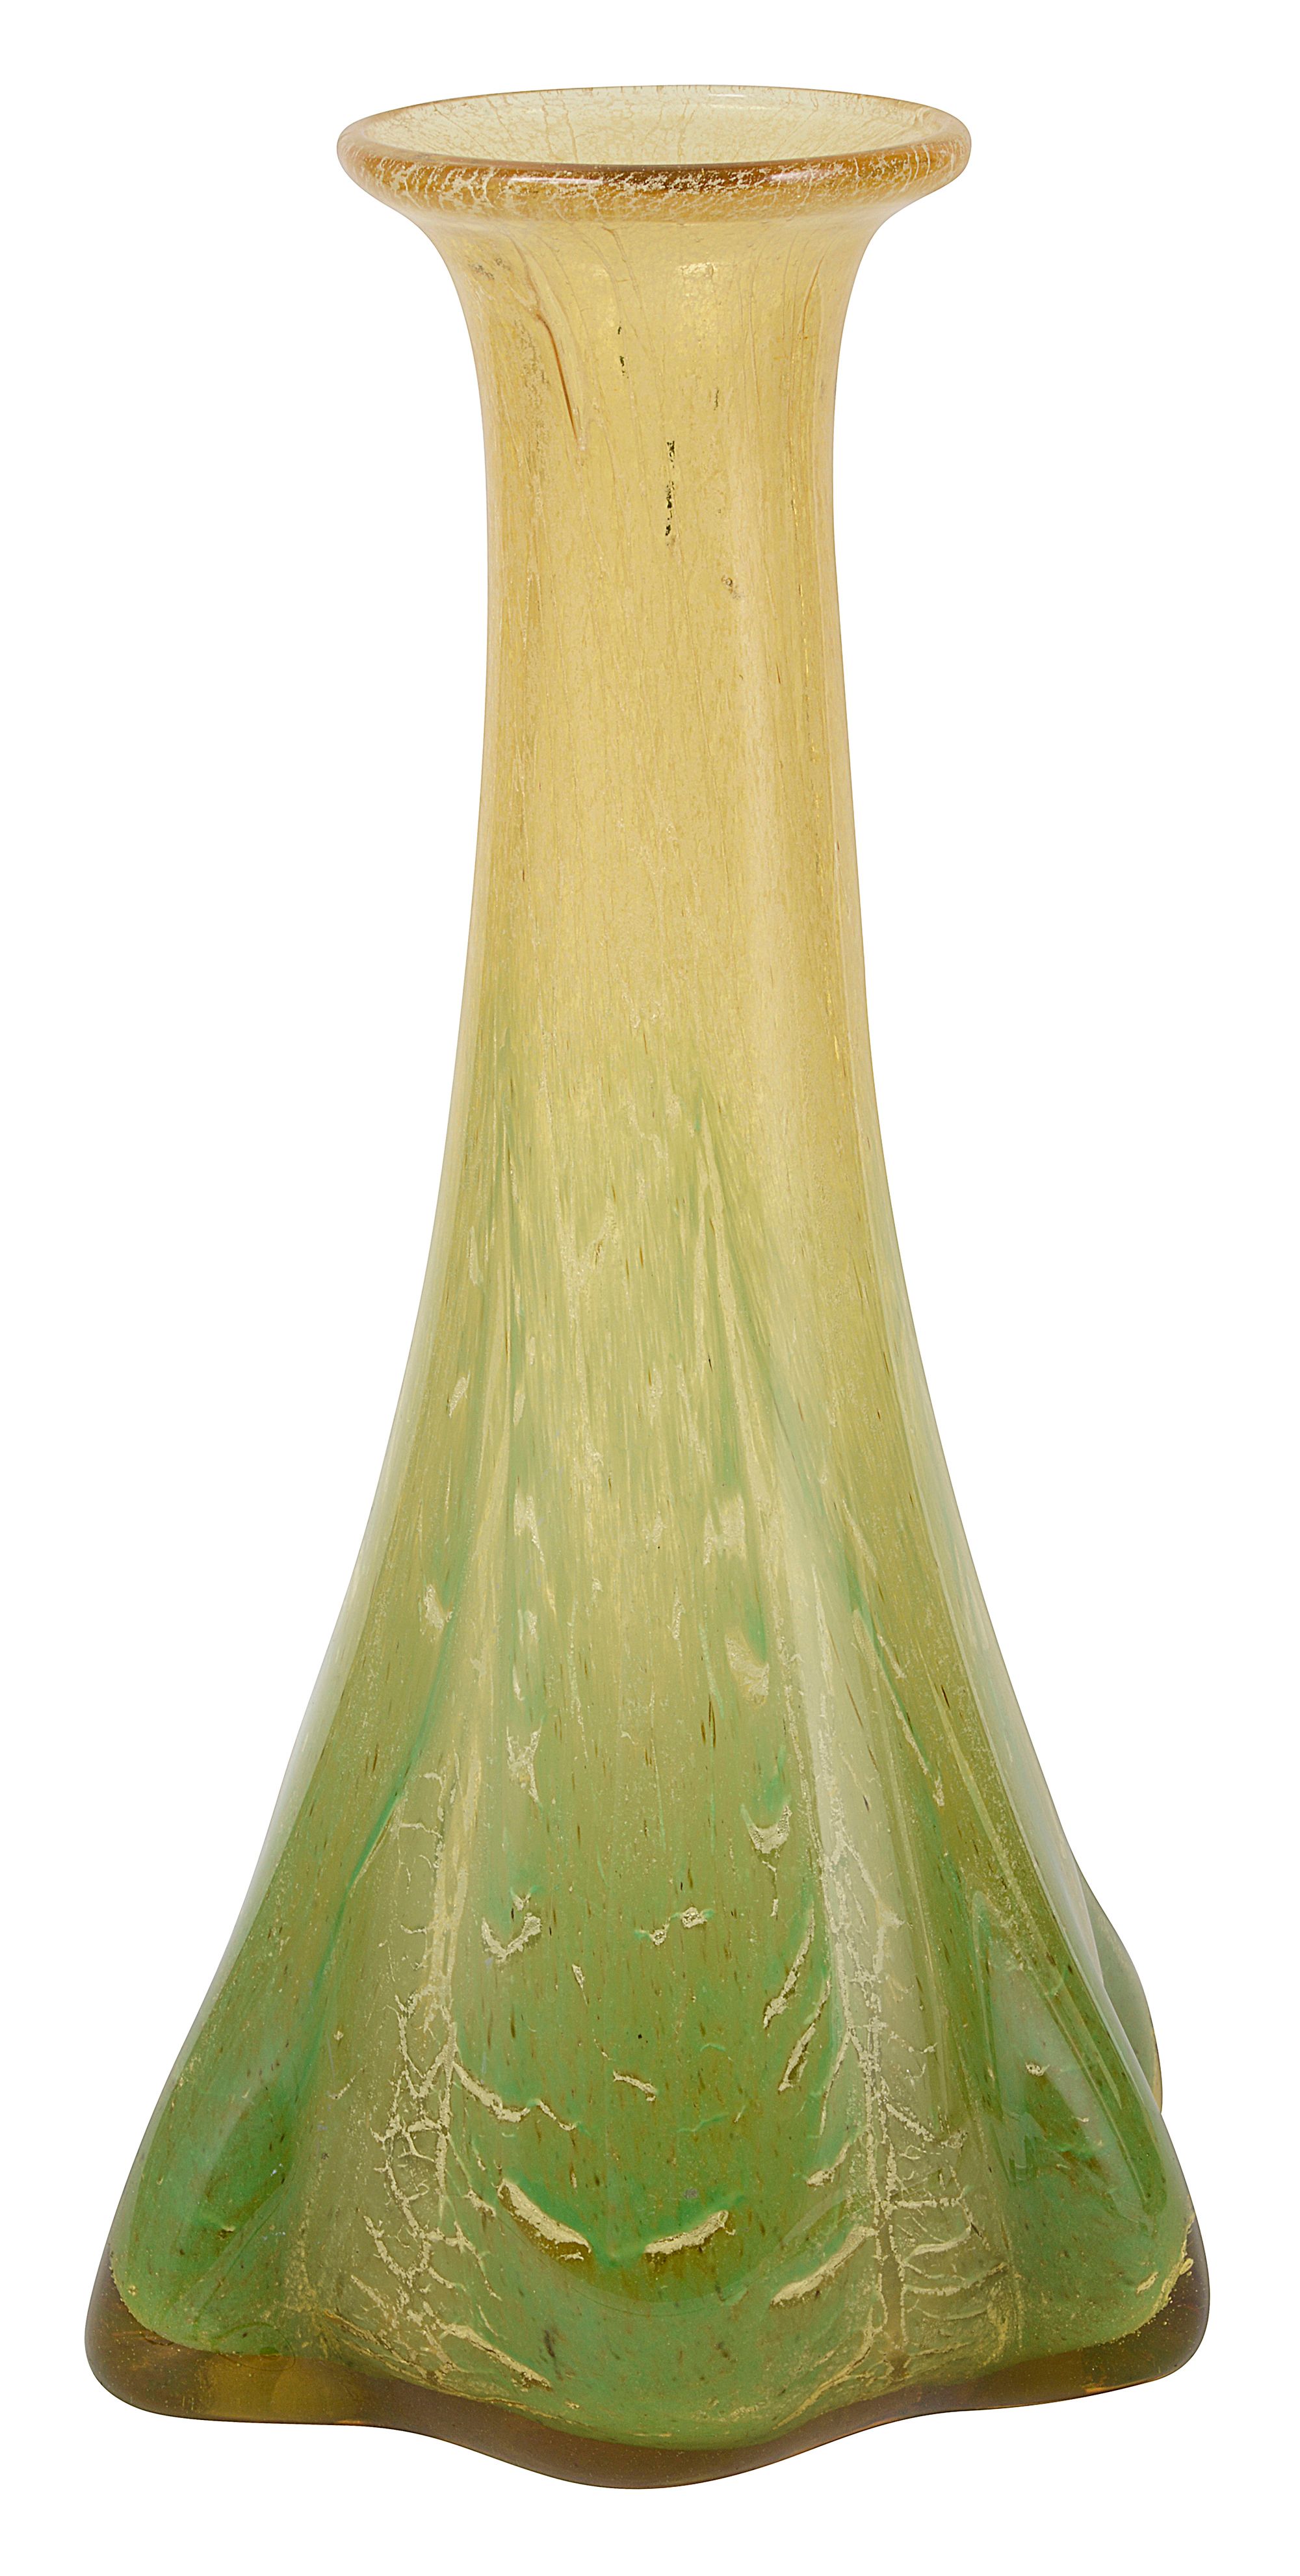 A 1930s WMF Ikora glass tall elephant foot vase designed by Carl Weidemann